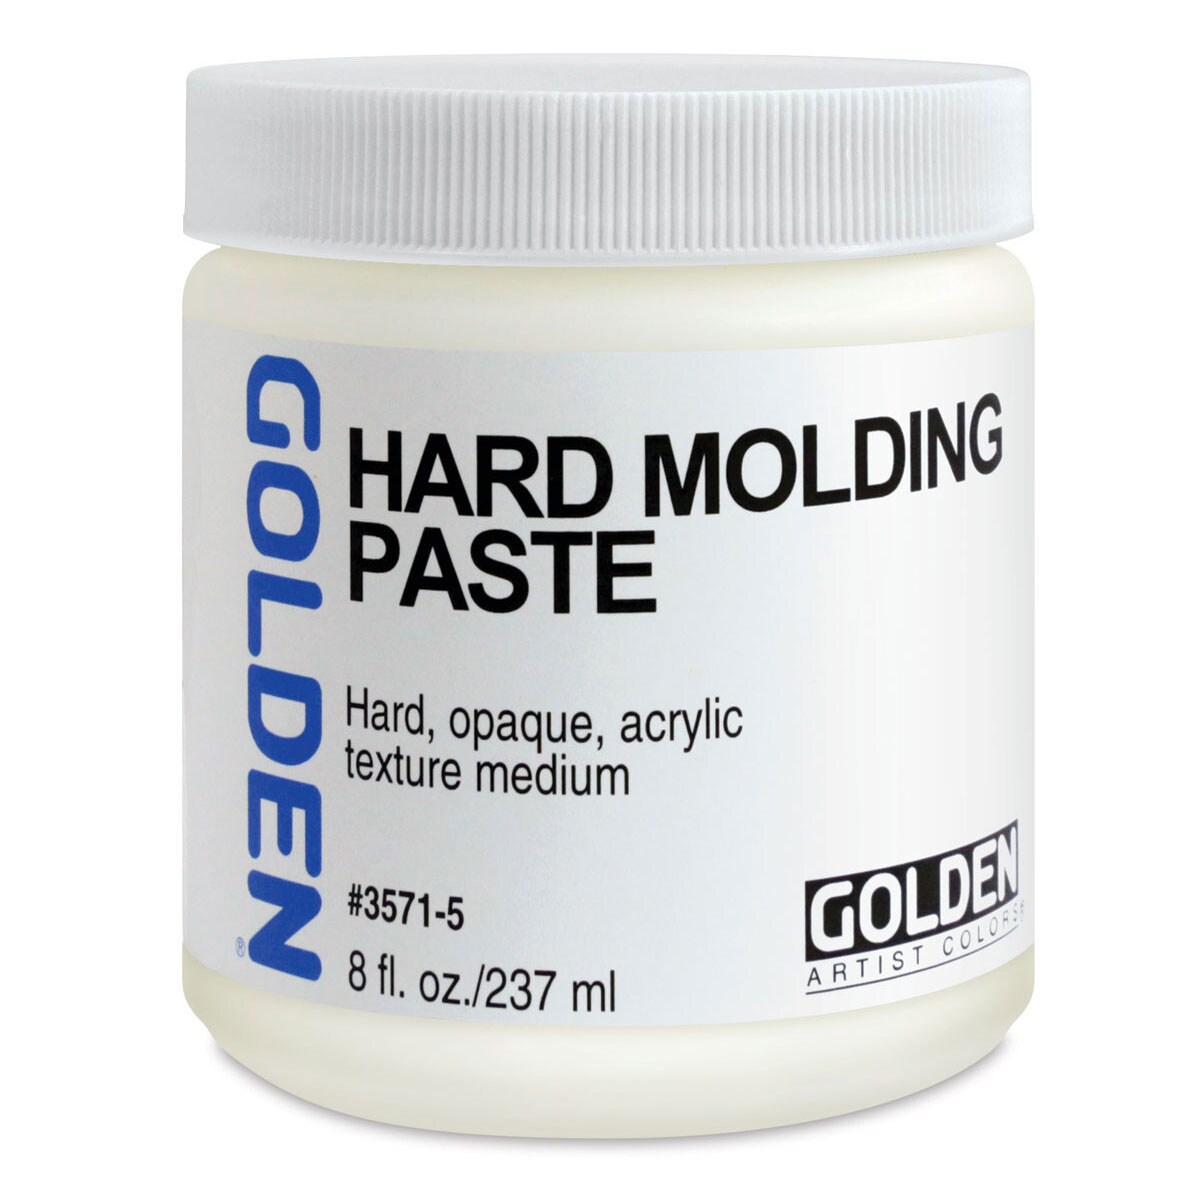 Golden- Hard Molding Paste, 8 oz jar